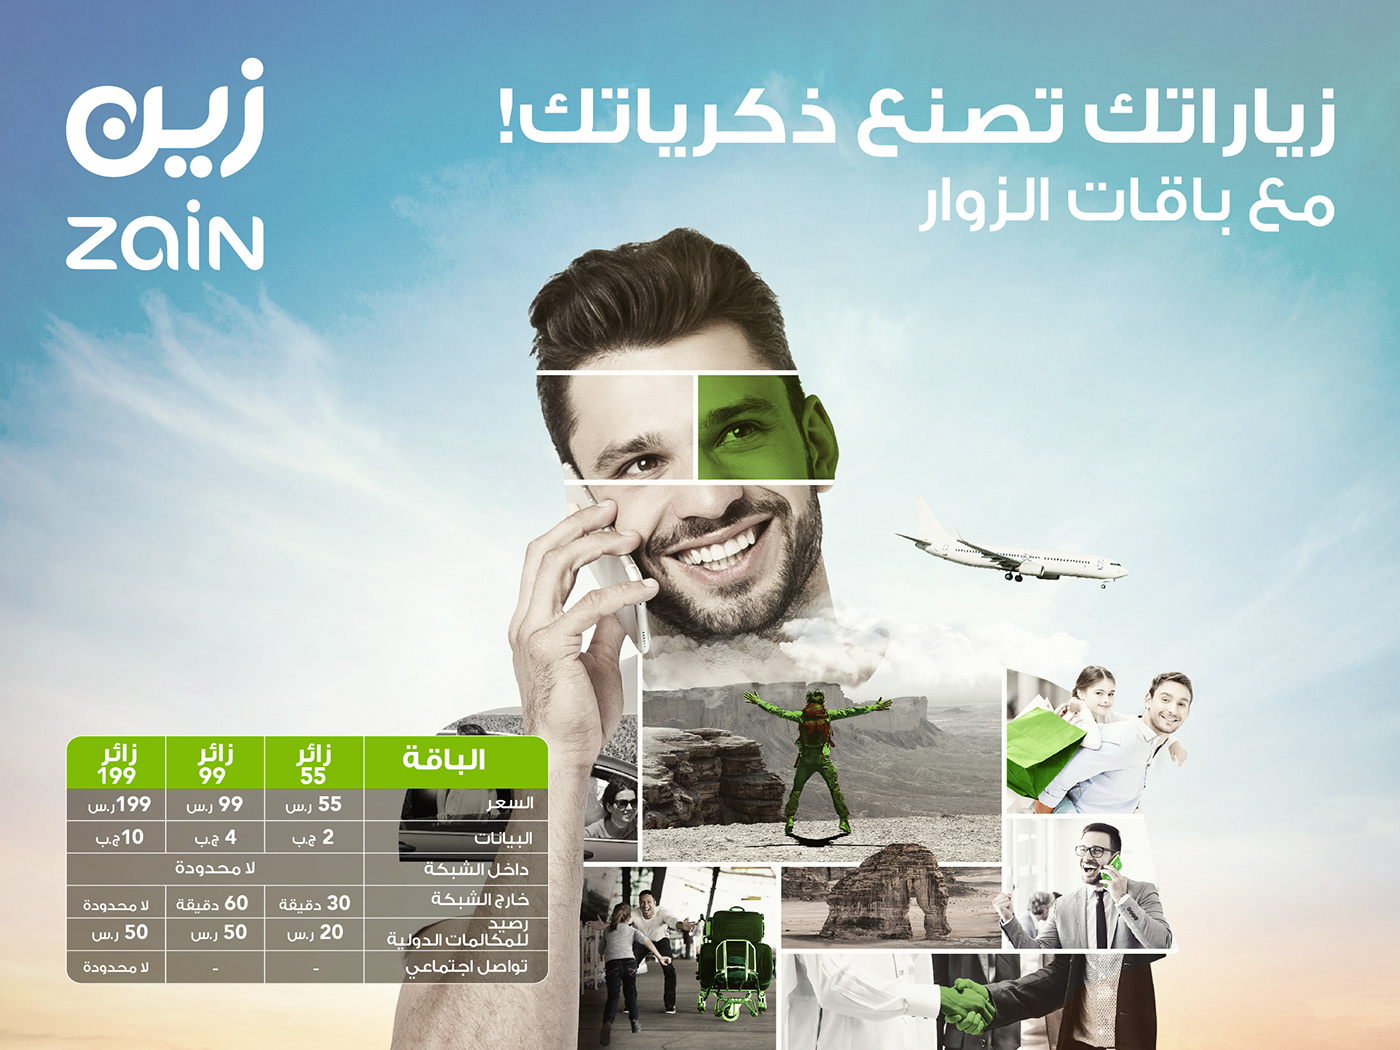 Internet Saudi Arabia social Telecom Zain